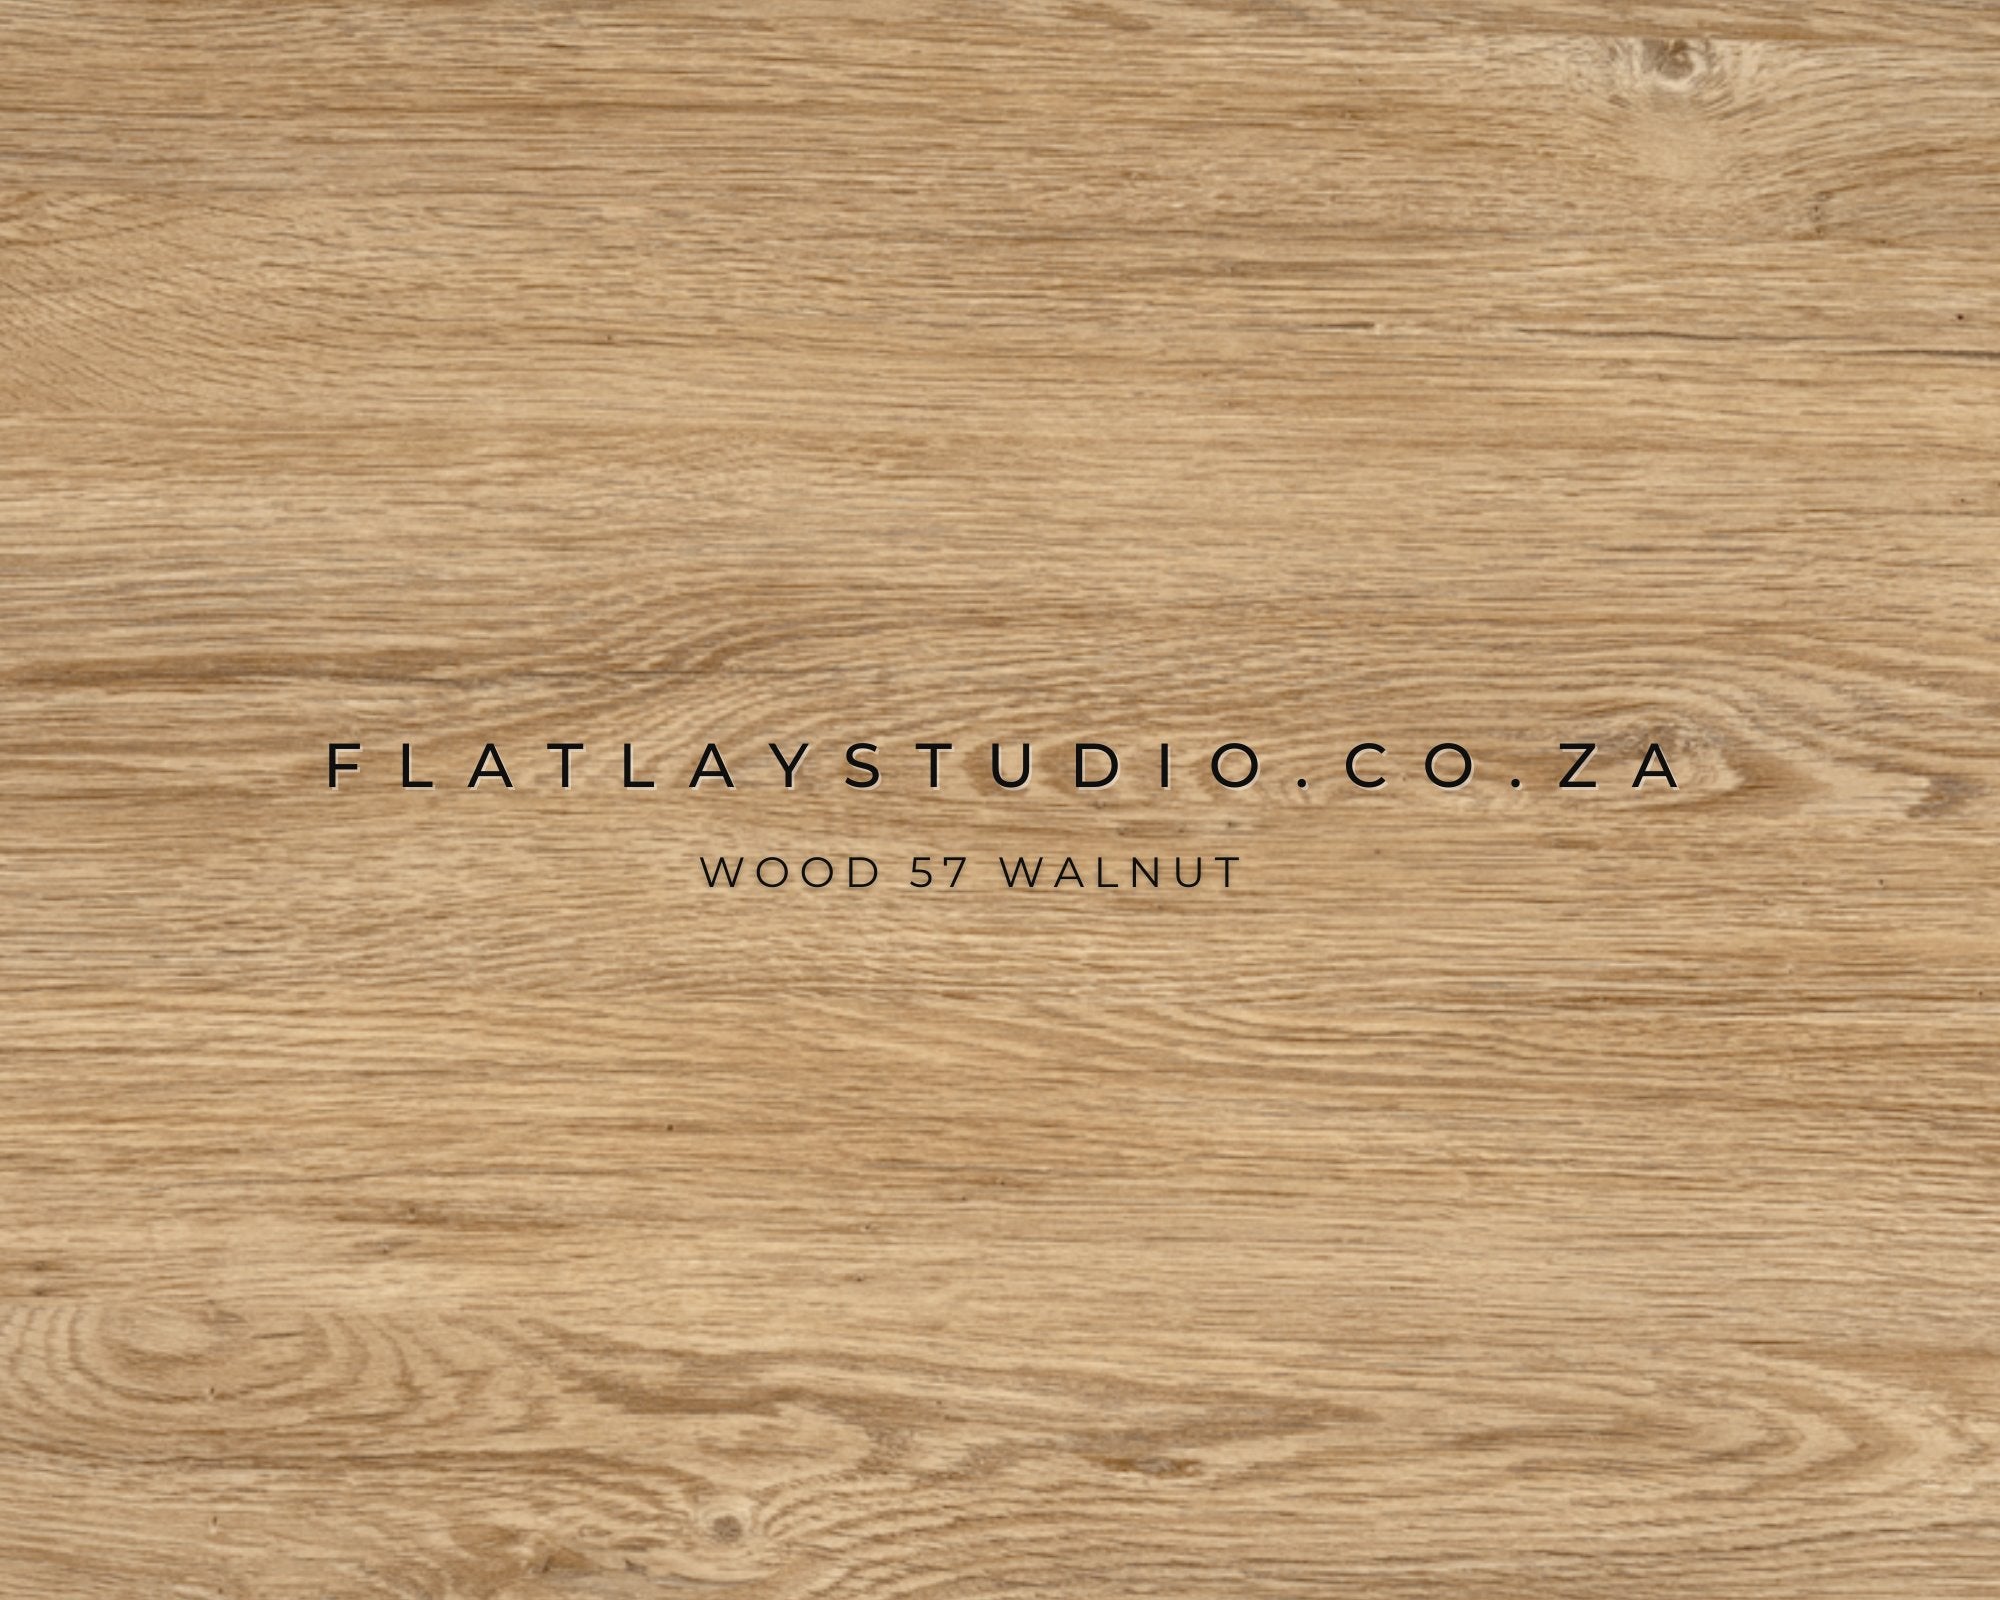 Wood 57 Walnut - FlatlayStudio